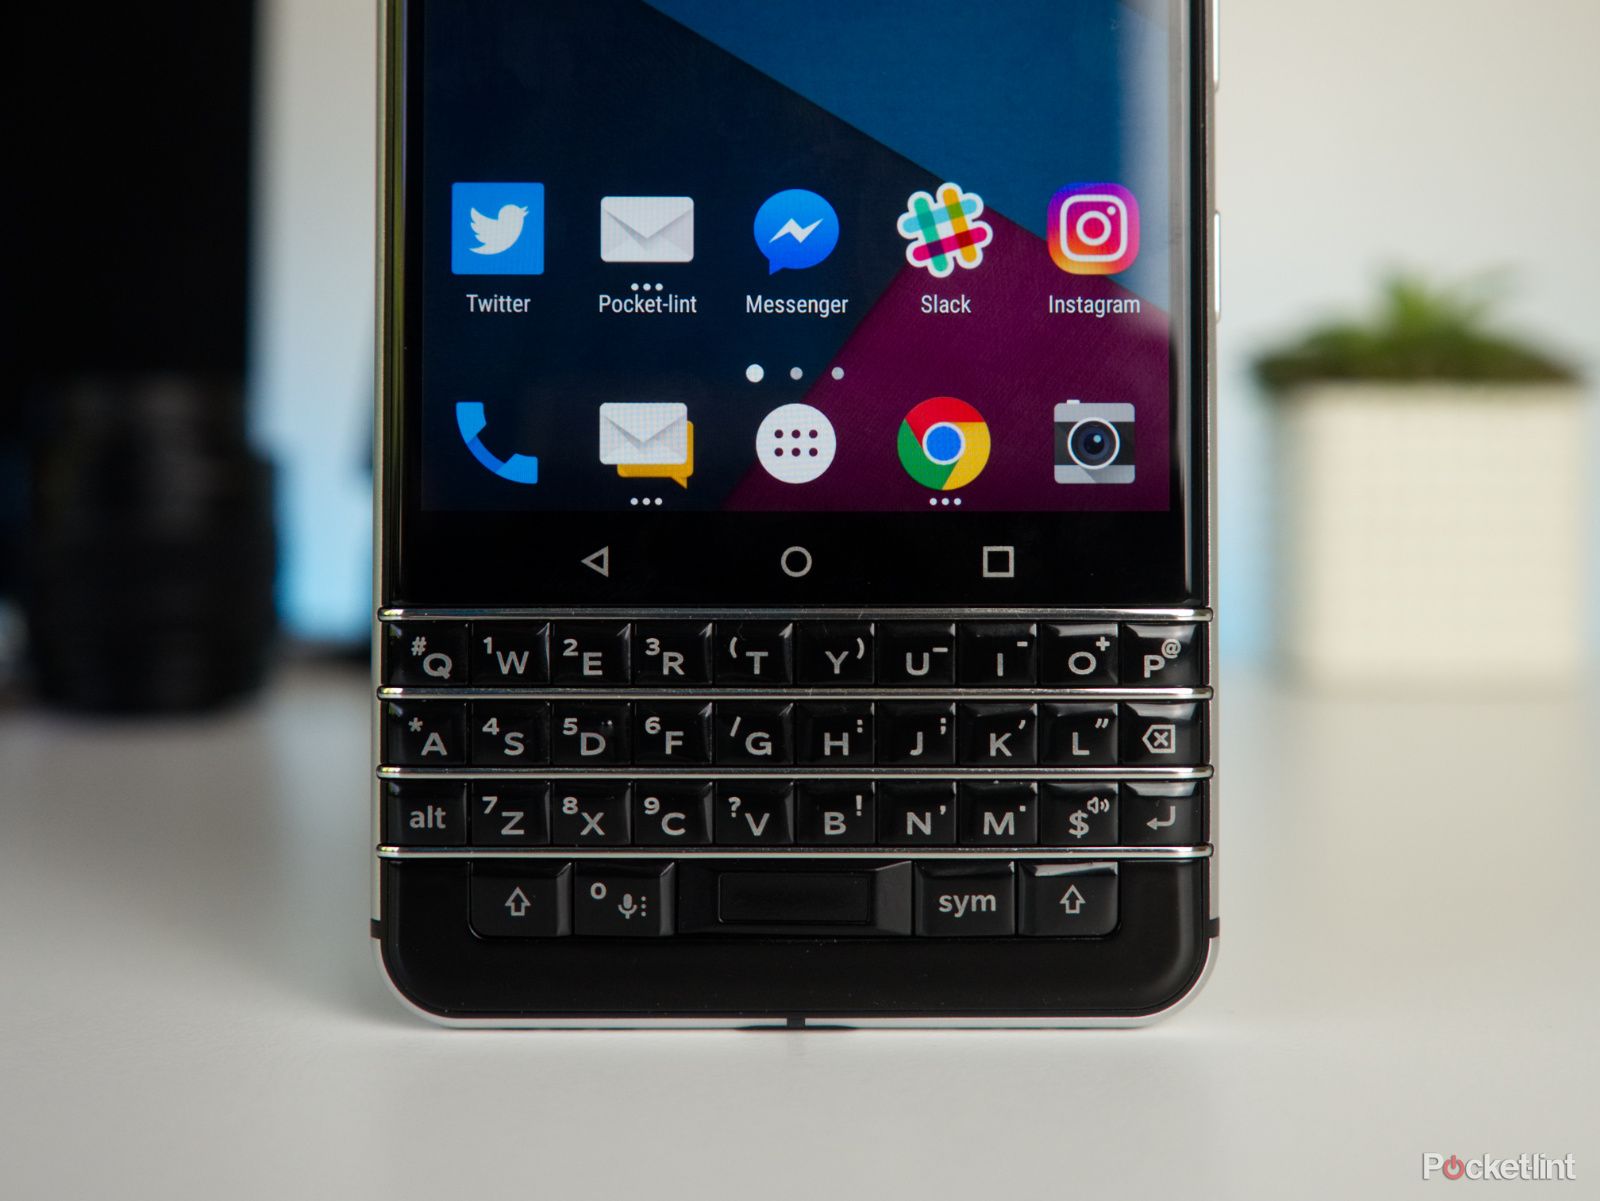 blackberry keyone review image 2